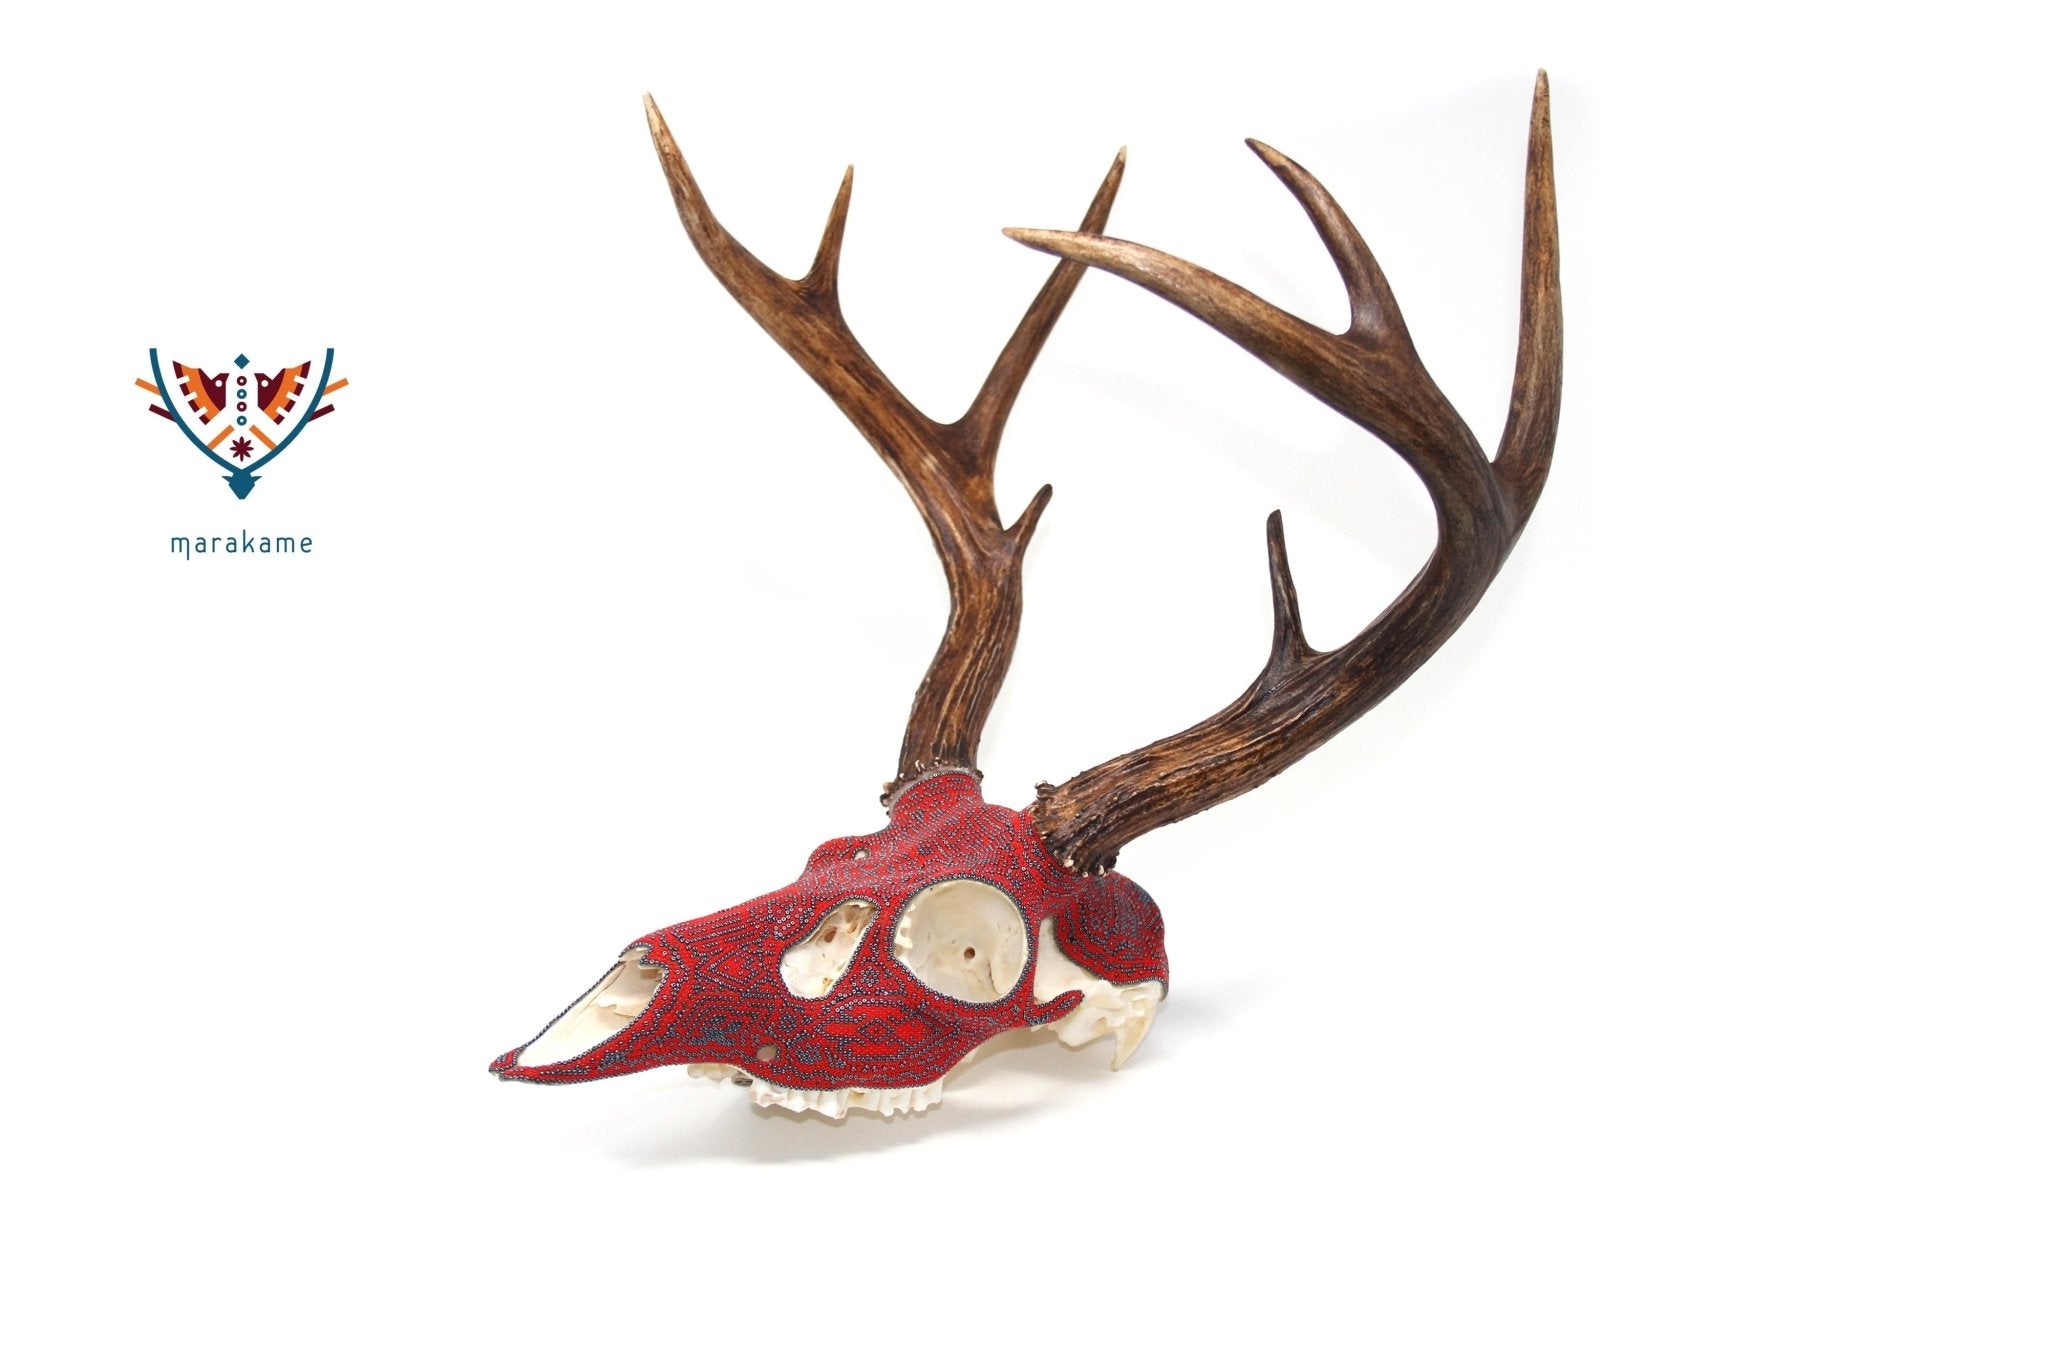 ウイチョル族の鹿の頭蓋骨 - 「ザウェ・タテワリ」 - ウイチョル族のアート - マラカメ